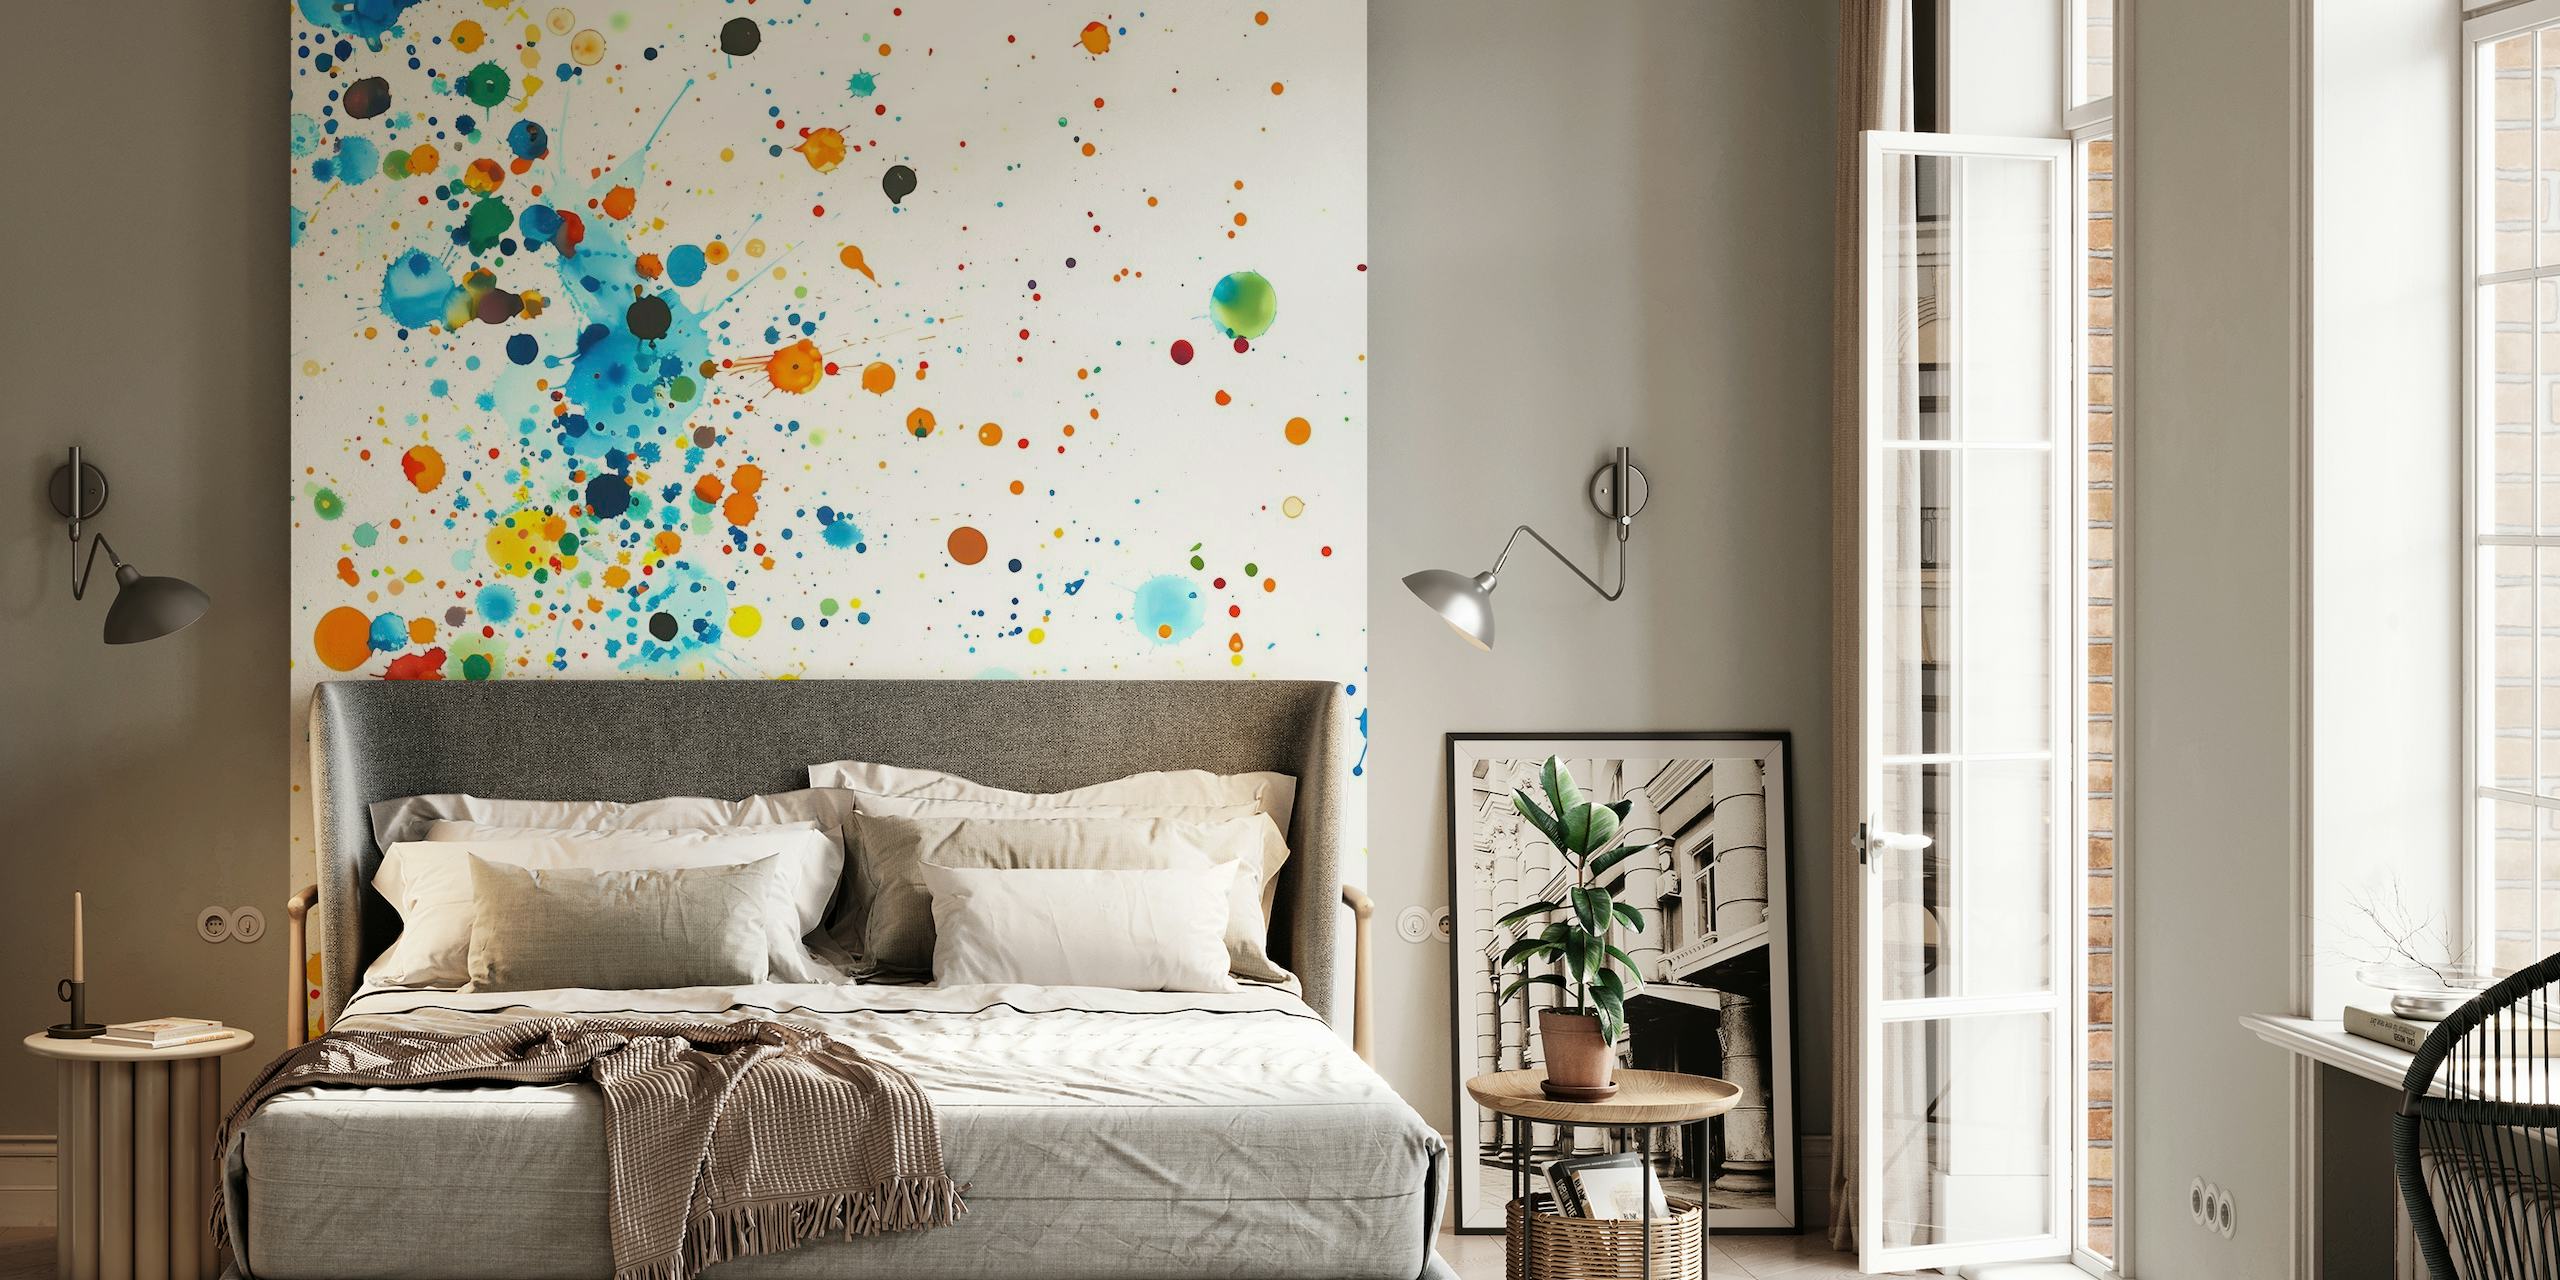 Farverig maling sprøjter vægmaleri sprængfyldt med levende nuancer på en hvid baggrund